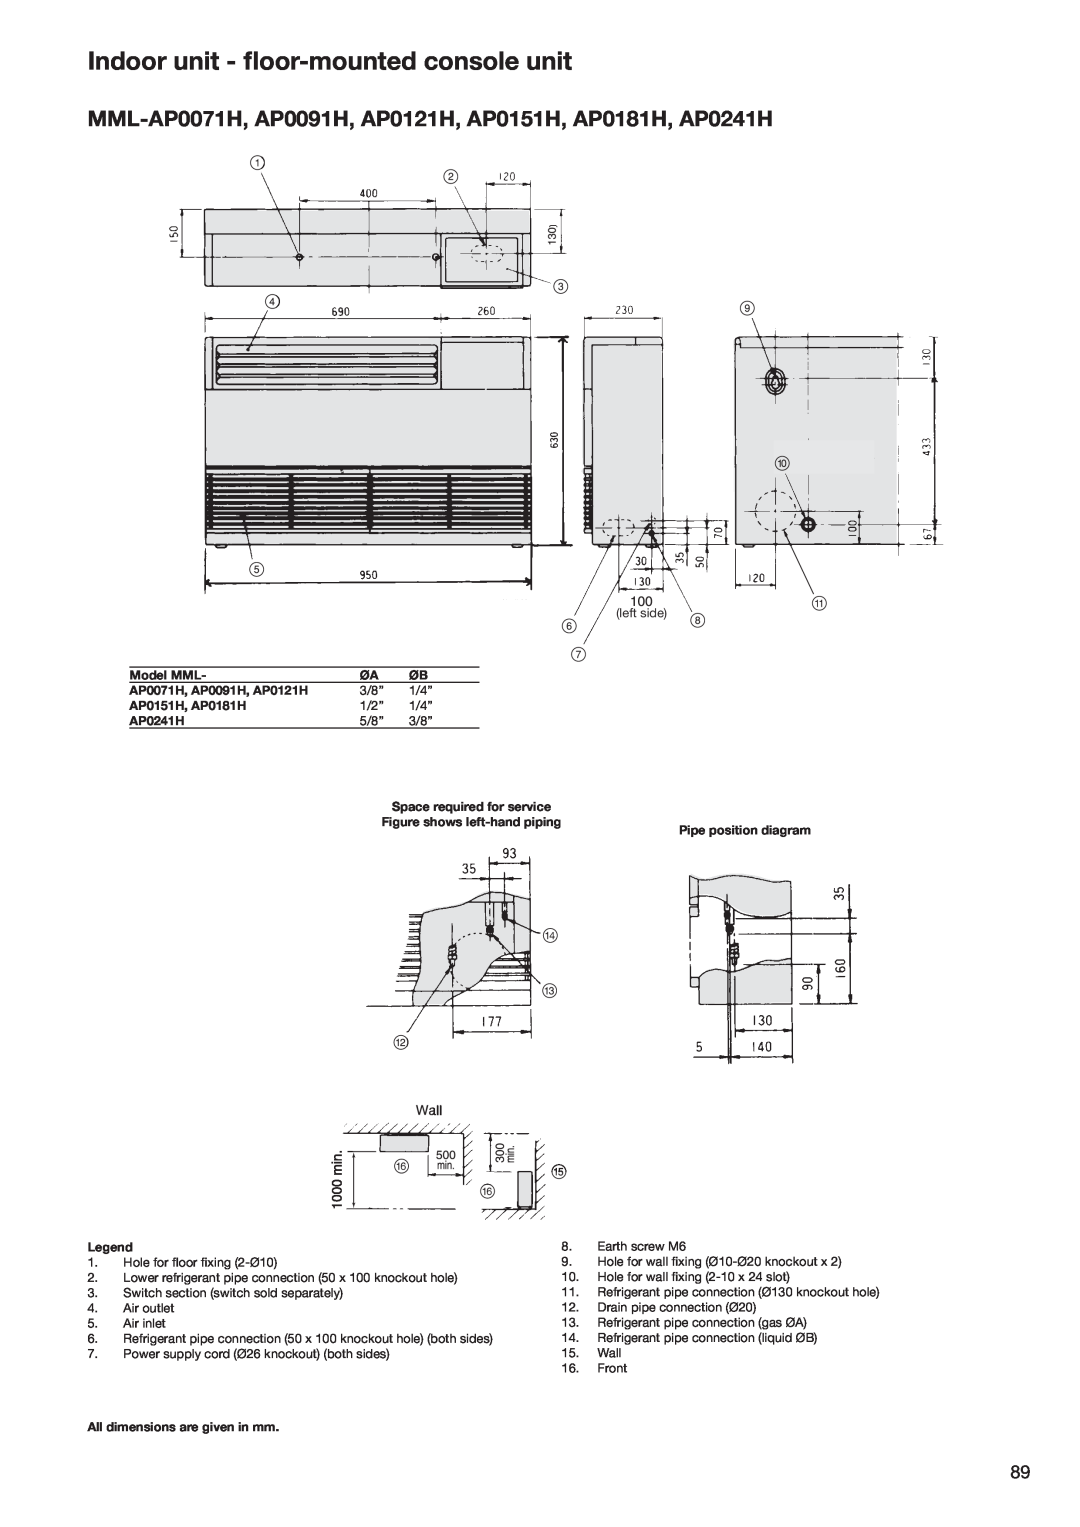 Toshiba HFC R-410A Indoor unit - ﬂoor-mountedconsole unit, Model MML, AP0071H, AP0091H, AP0121H, AP0151H, AP0181H, AP0241H 